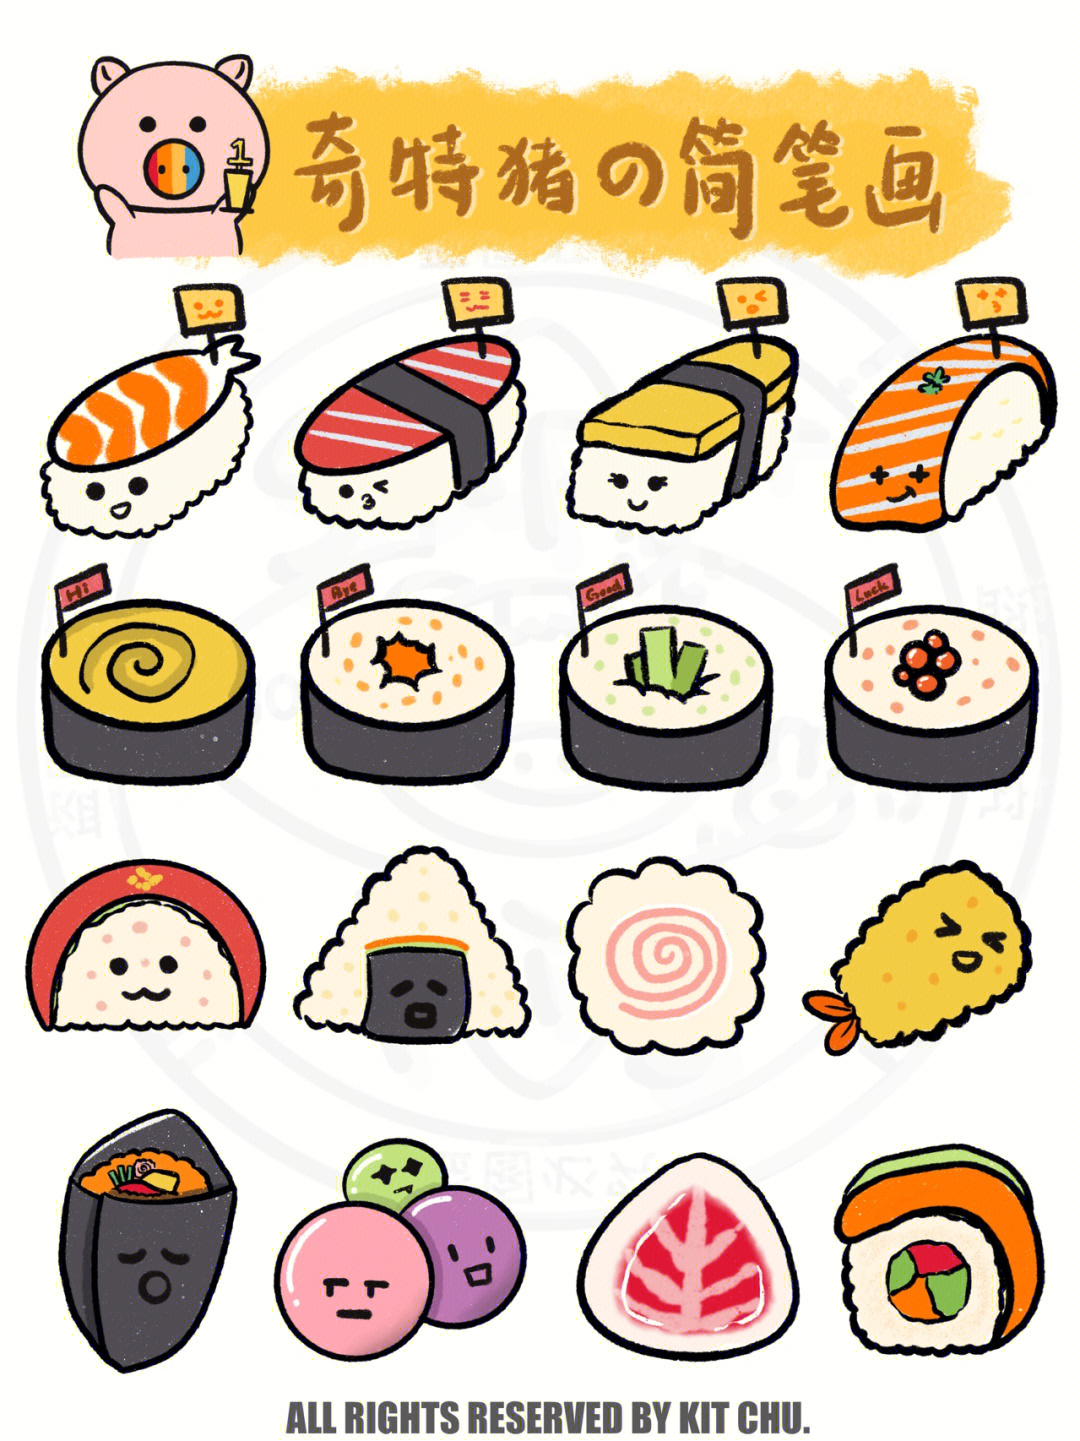 寿司简笔画彩色图片